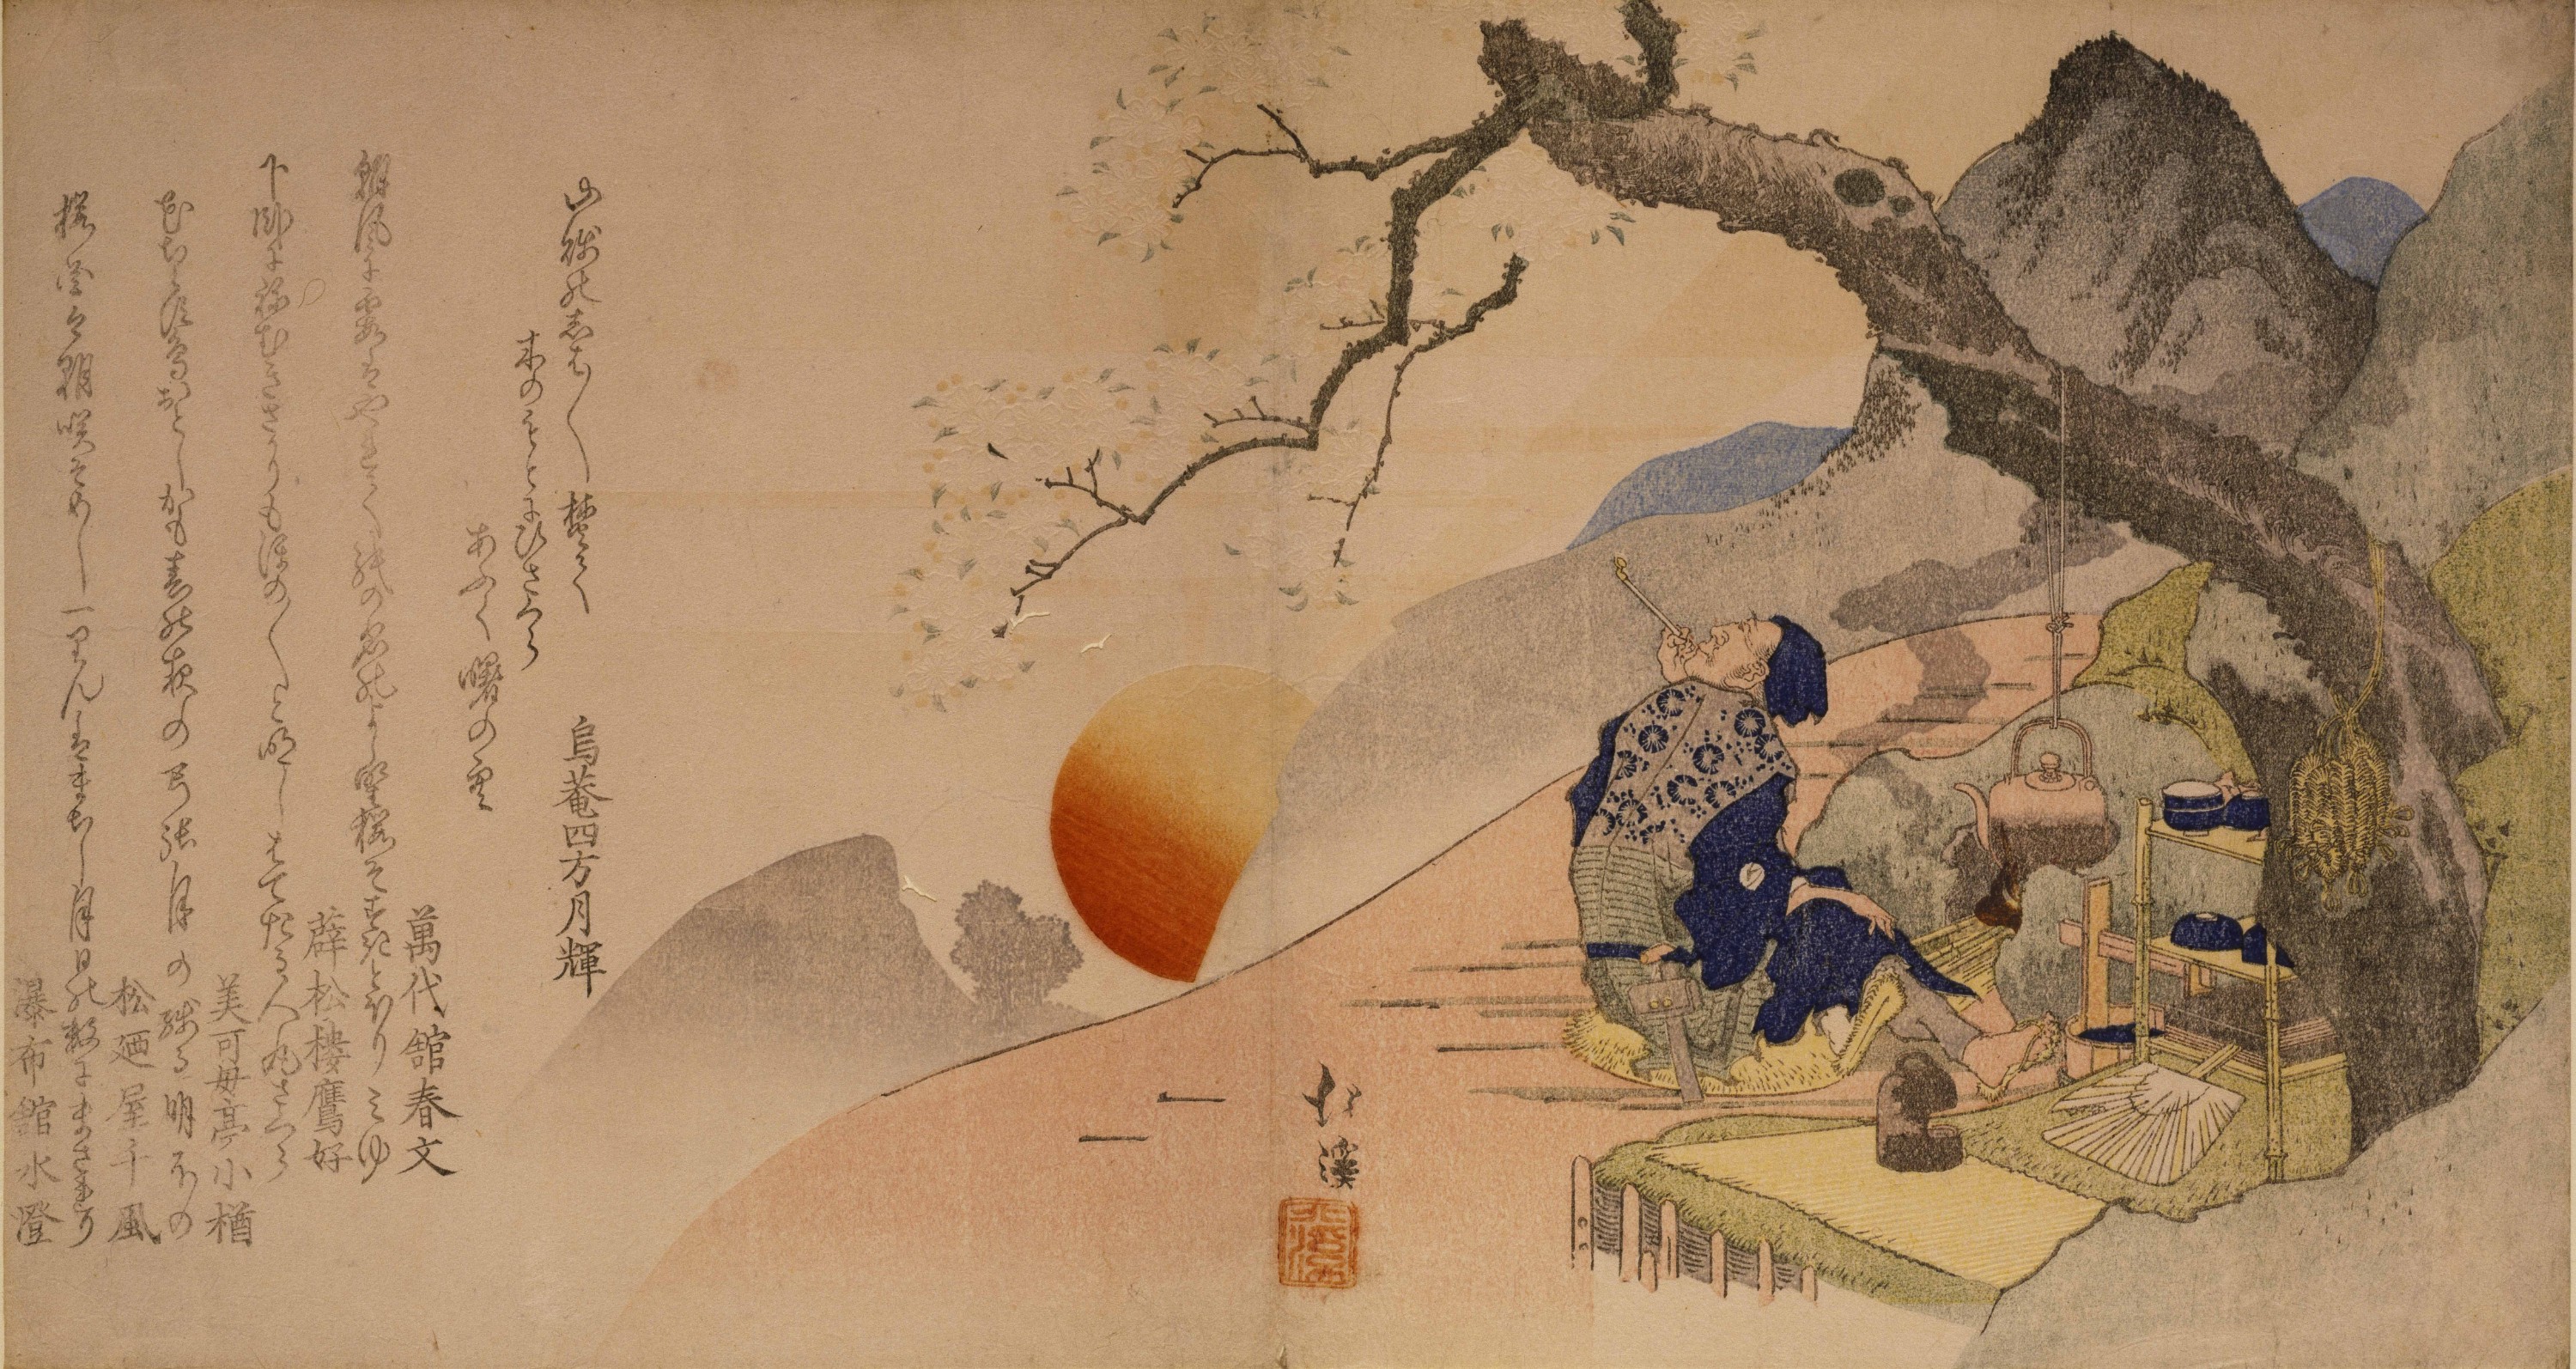 Art Japonais Affiche Murale - Utagawa Kuniyoshi et Katsushika Hokusai  Estampe Japonaise Affiche - Japon Deco Mur Ensemble De 3 Affiche Japon  Vintage